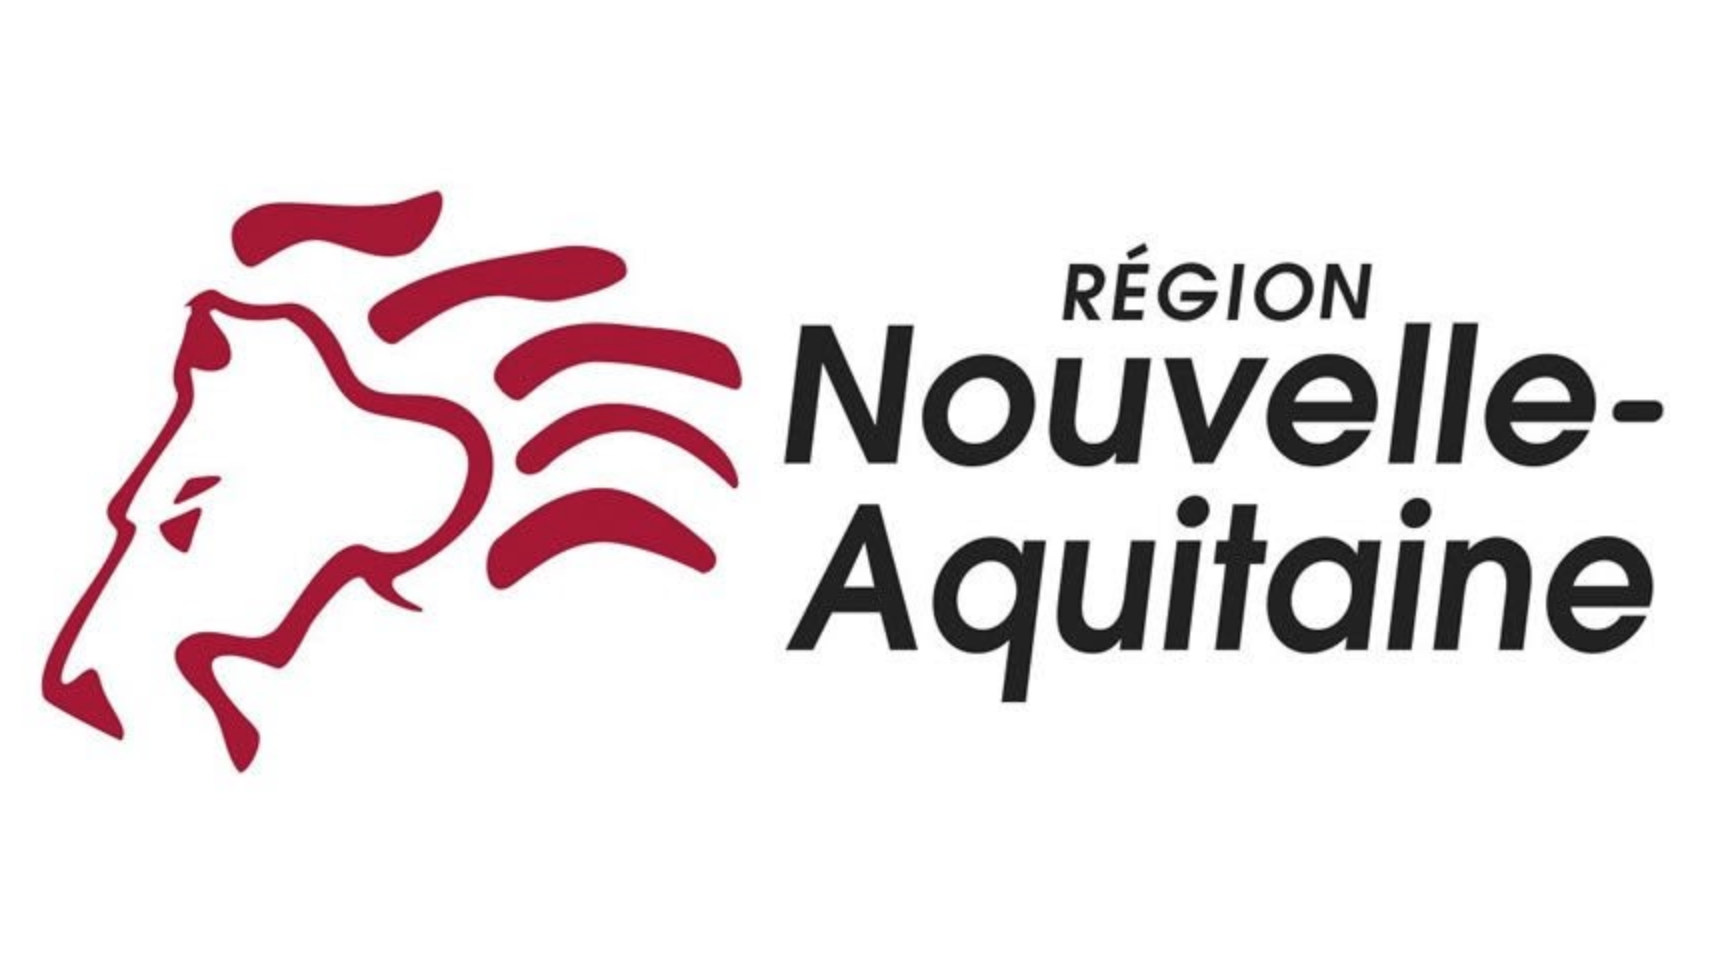 Nouvelle-Aquitaine logo